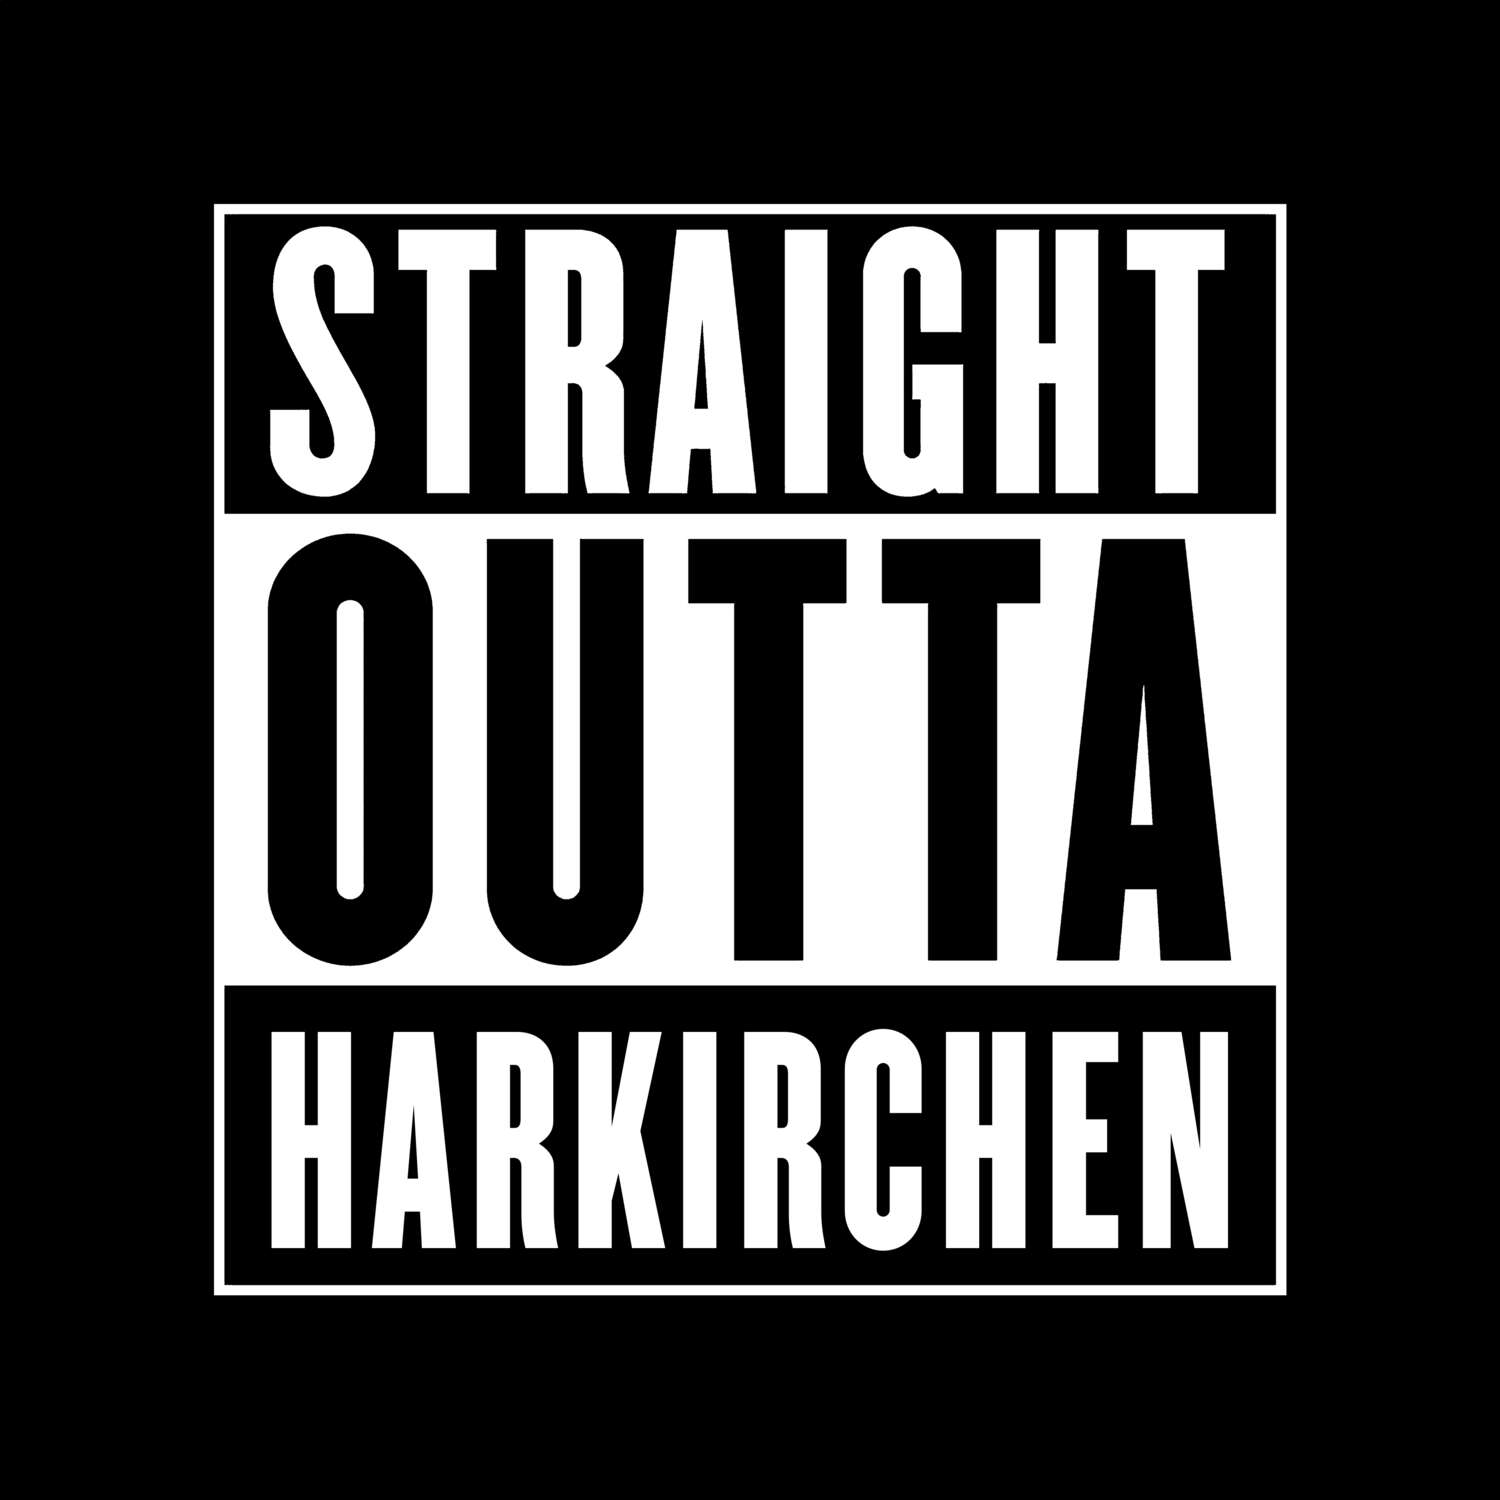 Harkirchen T-Shirt »Straight Outta«